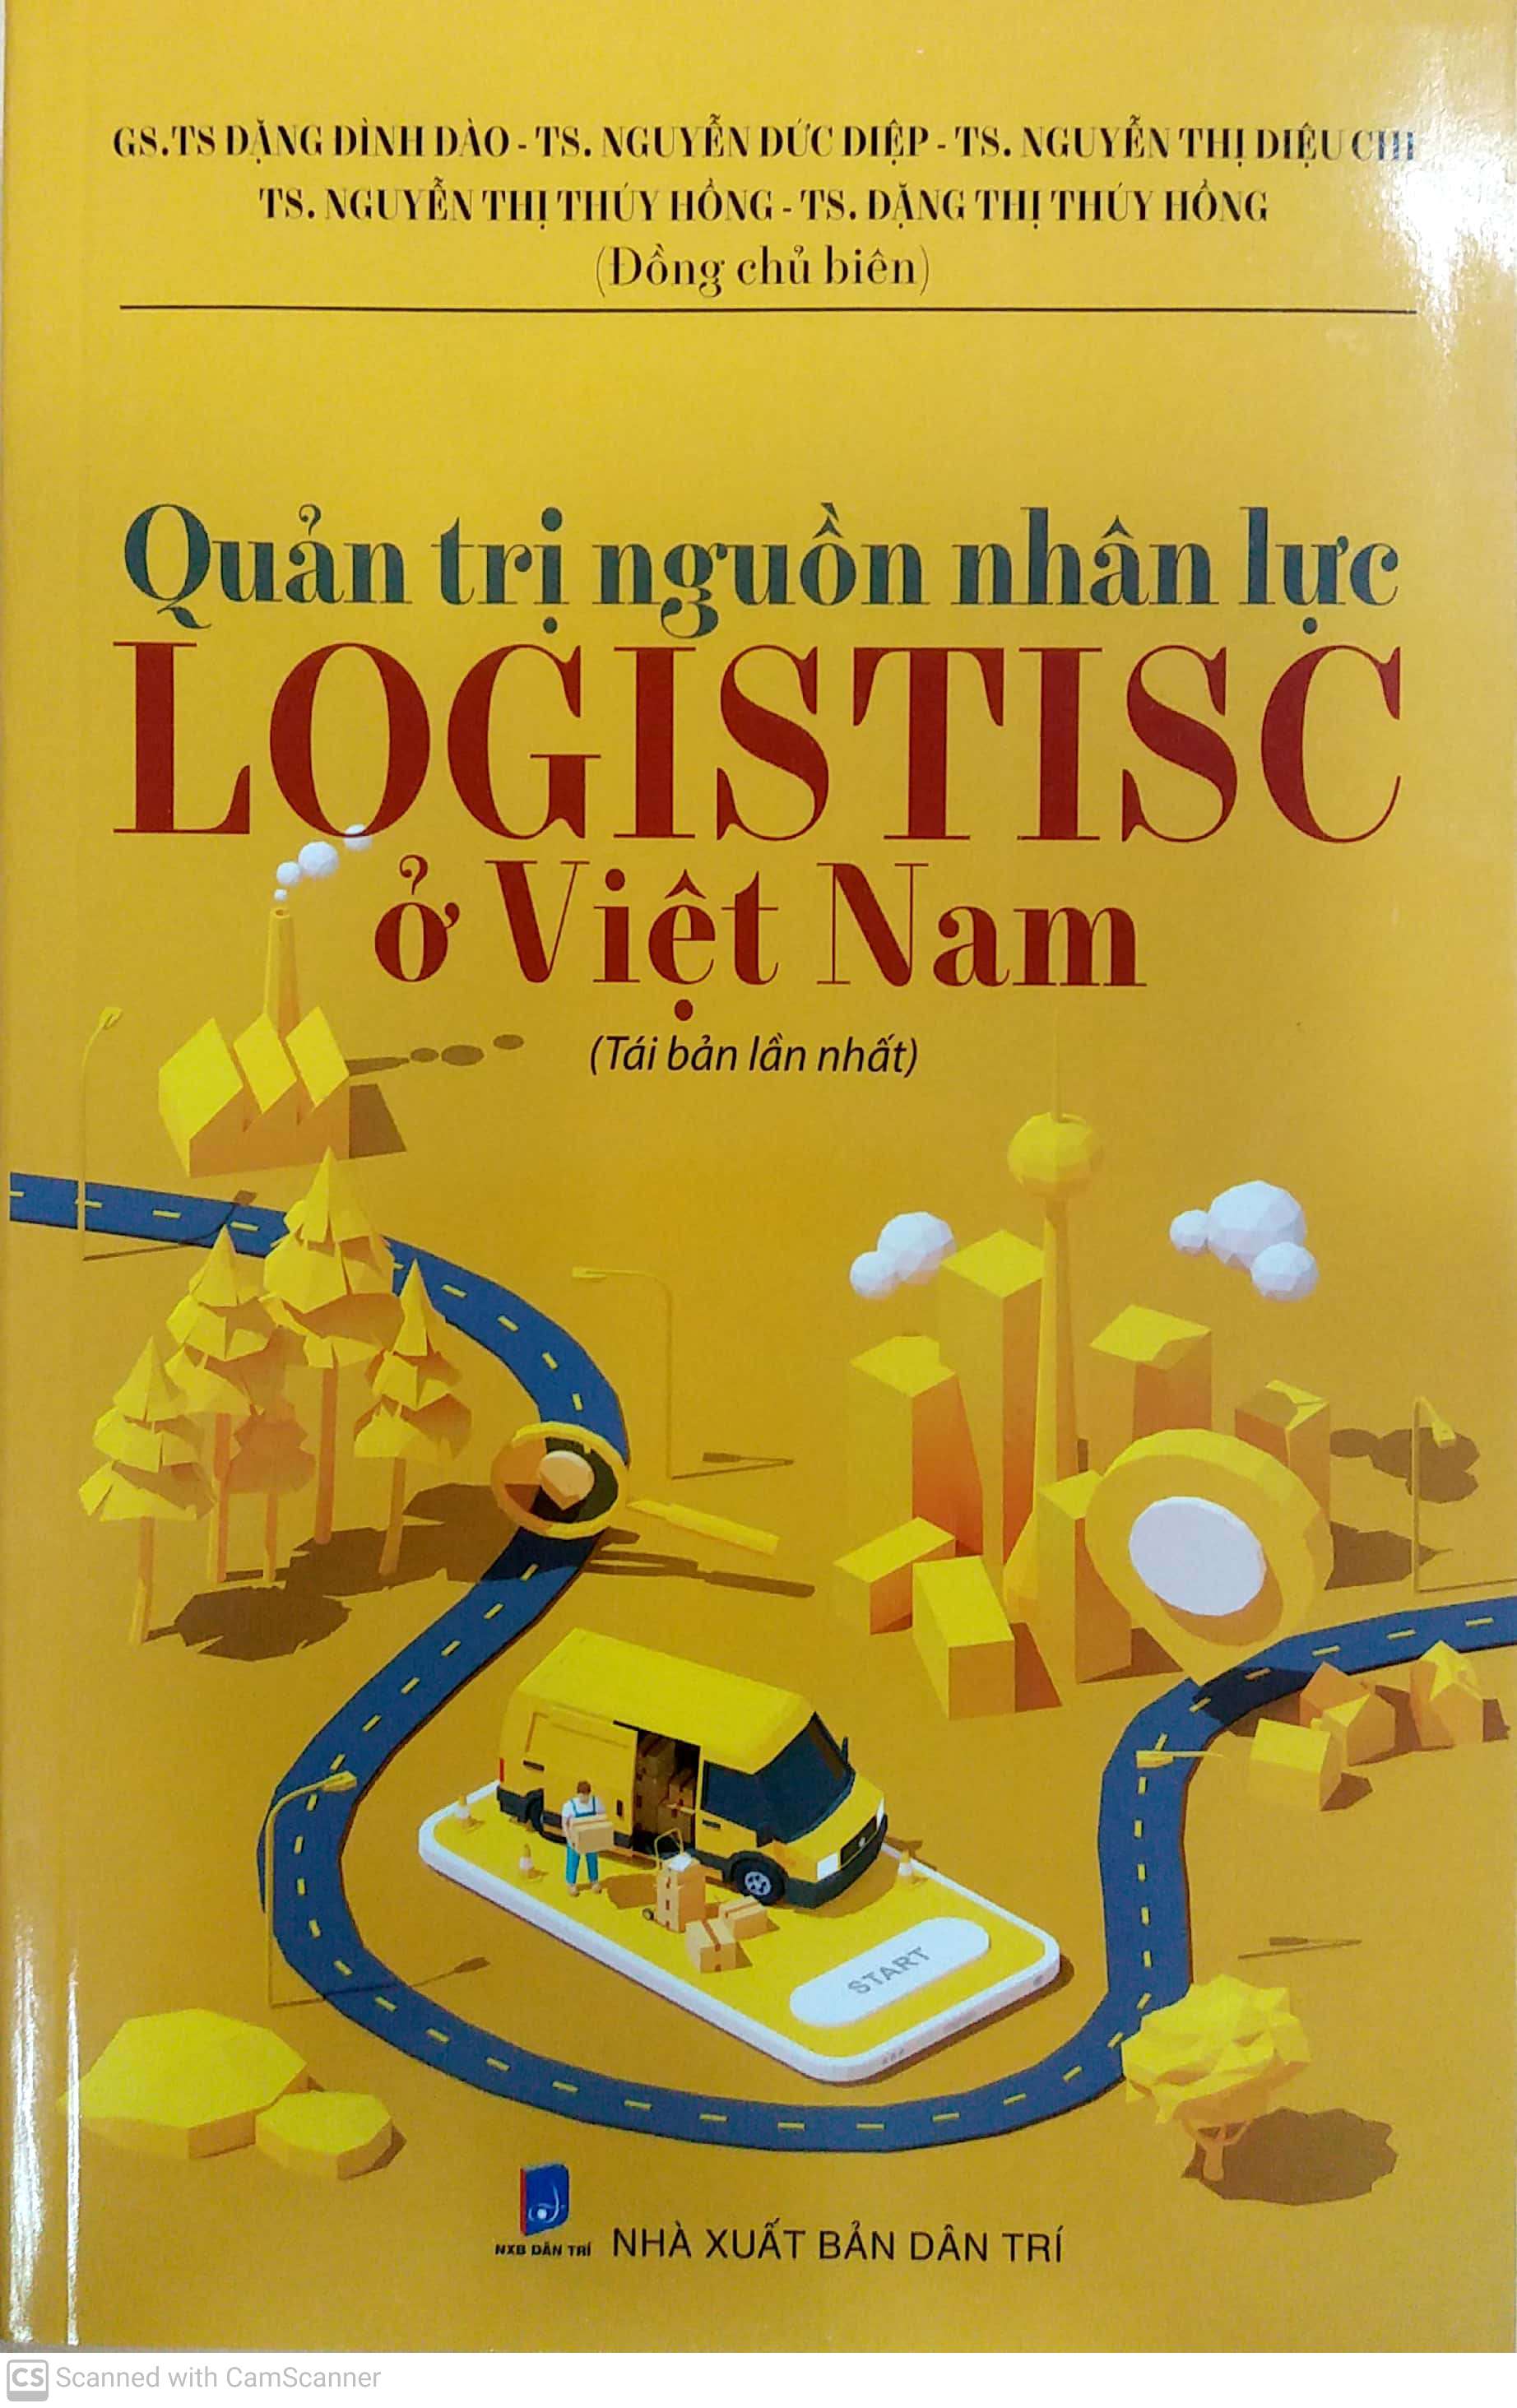 Quản trị nguồn nhân lực logistisc ở Việt Nam